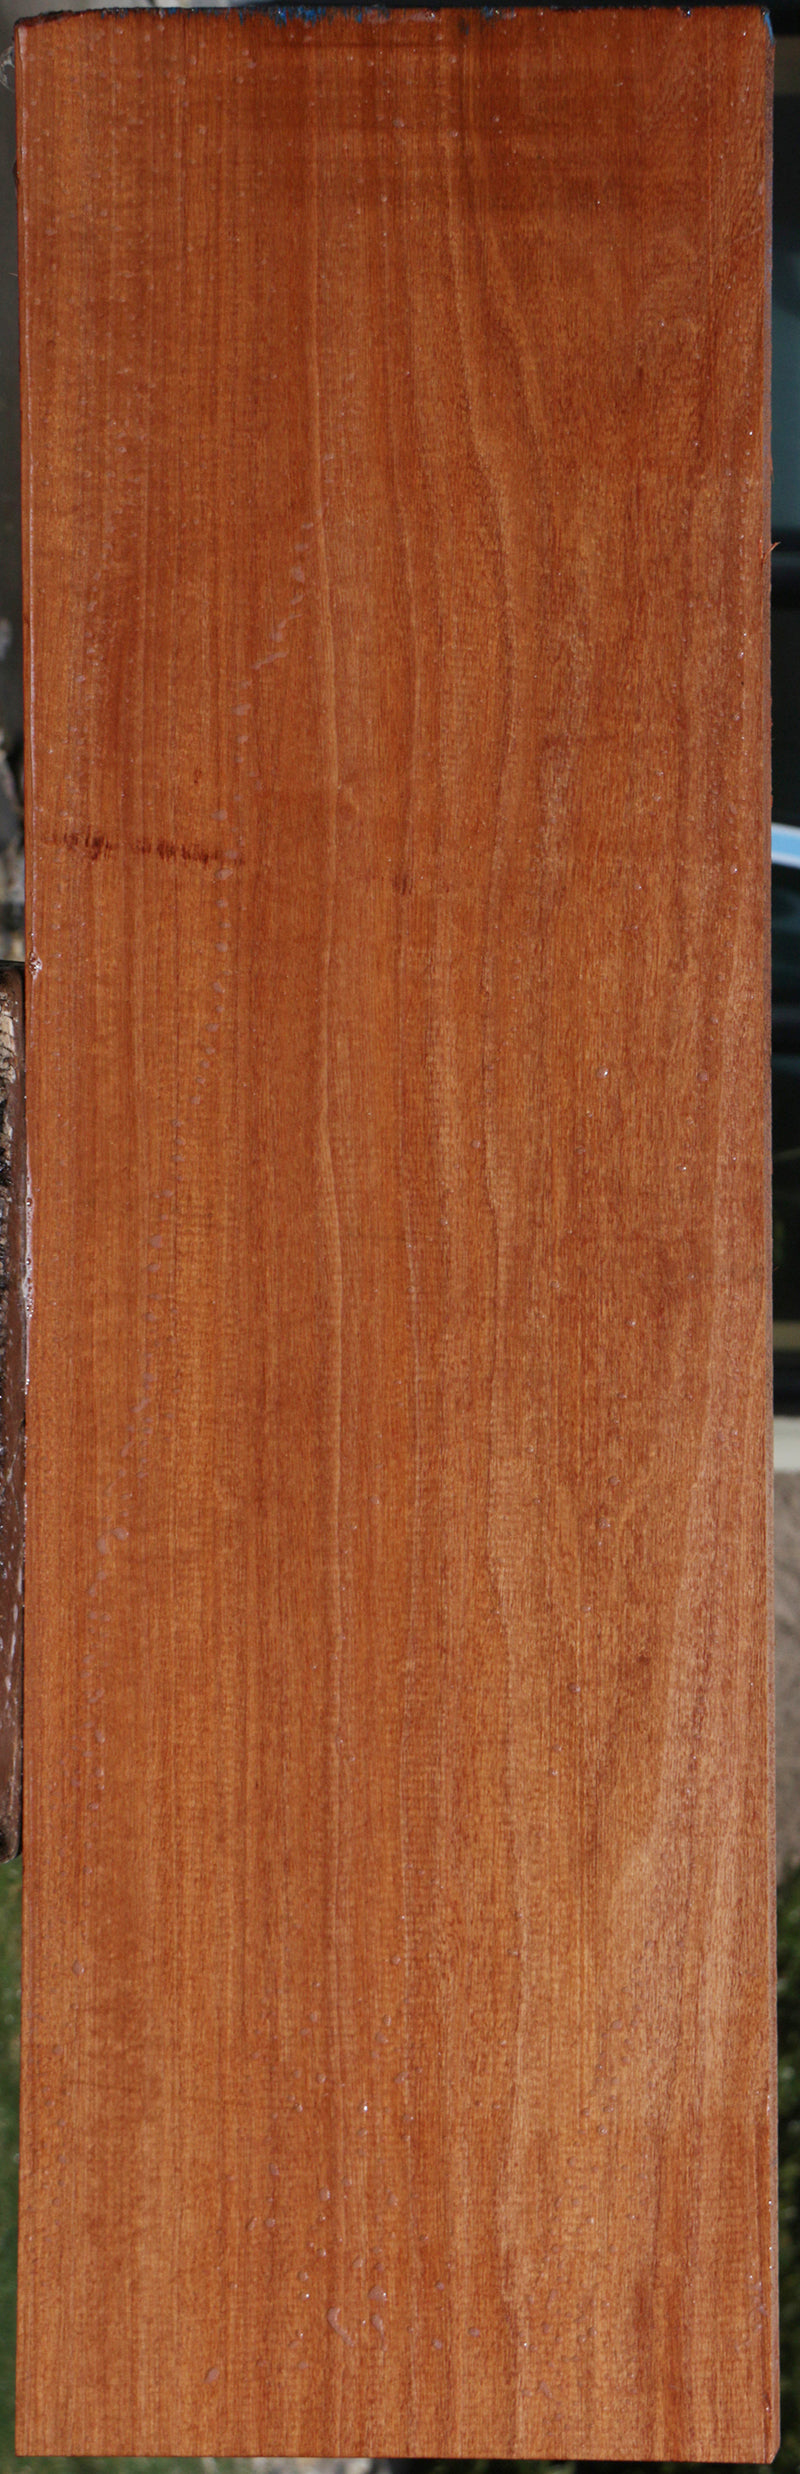 Exhibition Makore Lumber